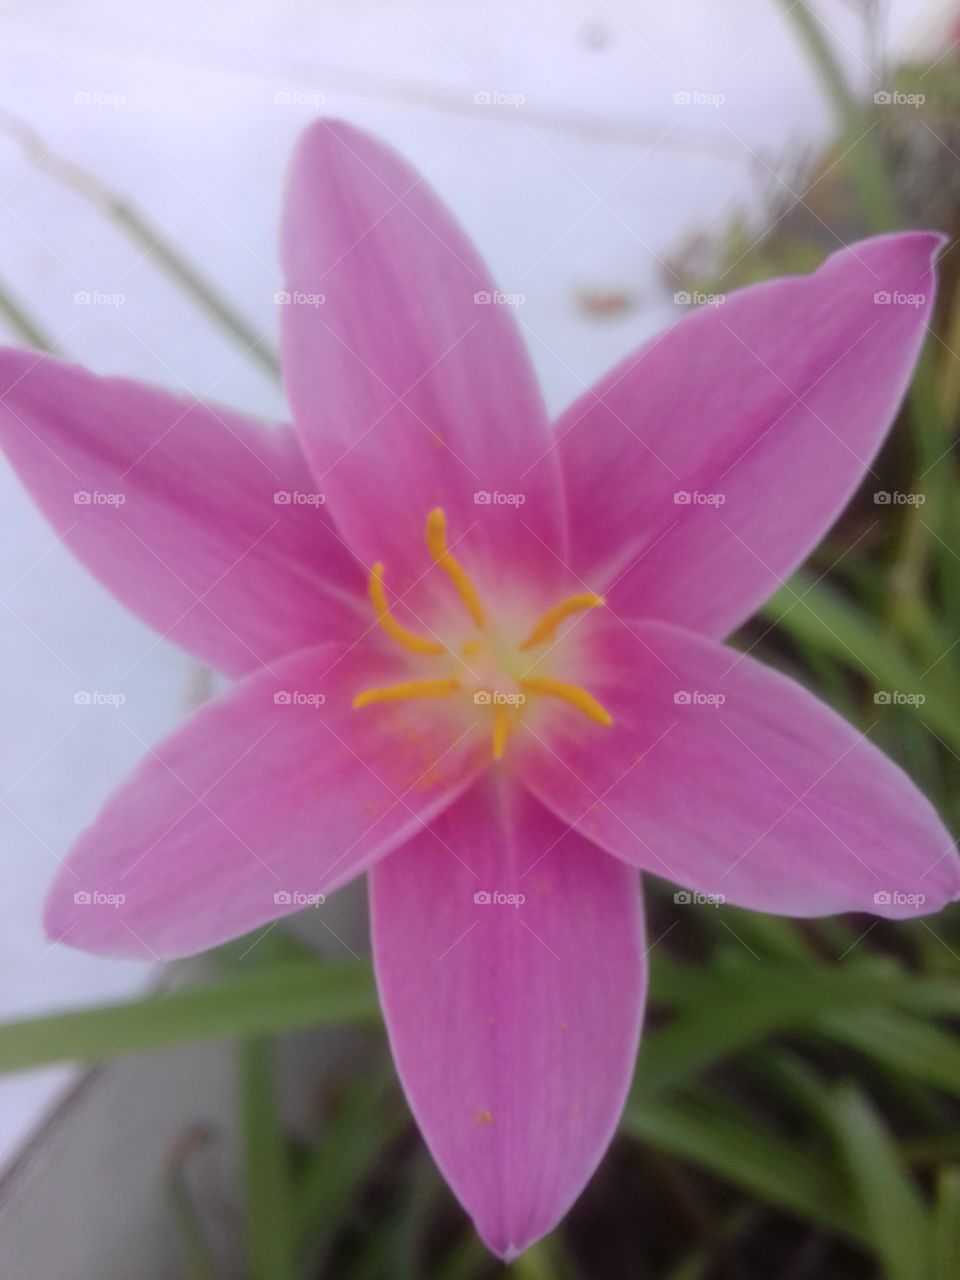 Flor del jardín (pink) Fotografía tomada en el jardín de mi abuelita, pequeños momentos de la vida